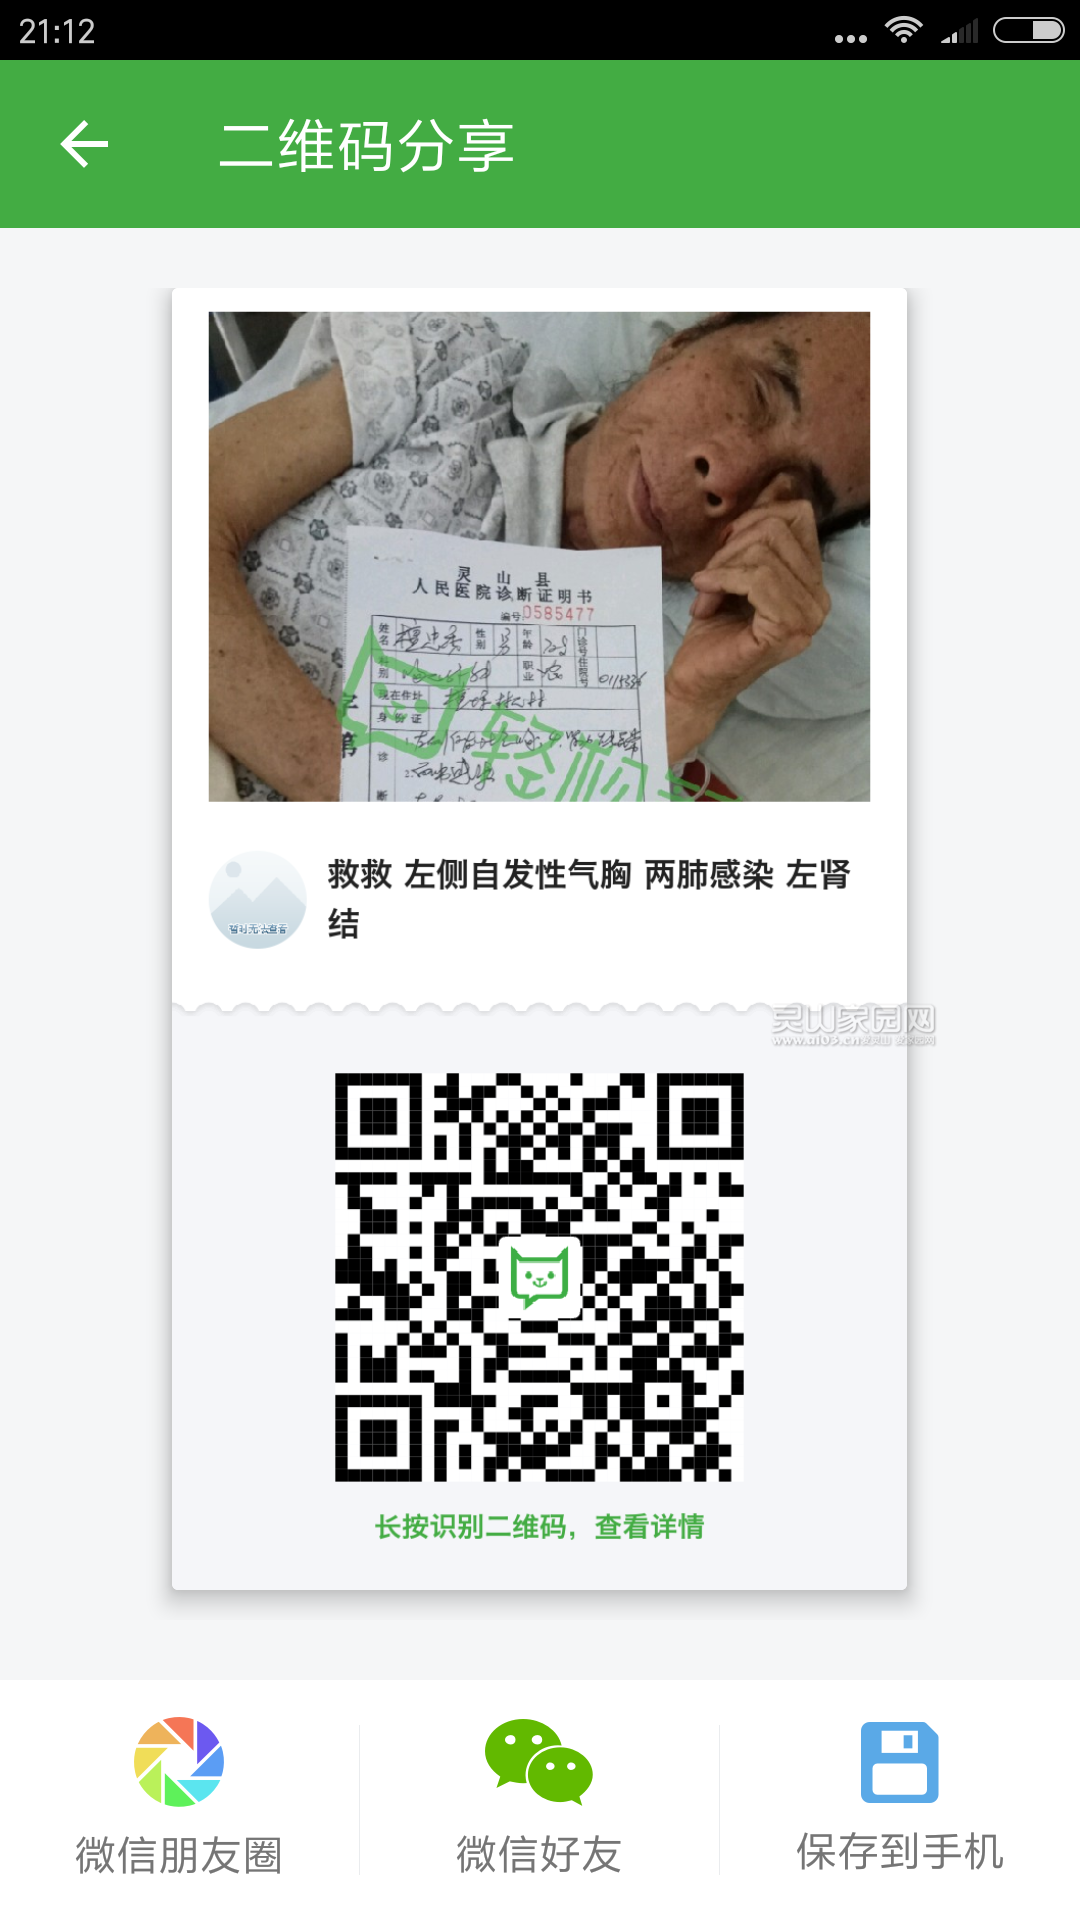 Screenshot_2017-05-09-21-12-06-028_com.qingsongchou.social.png